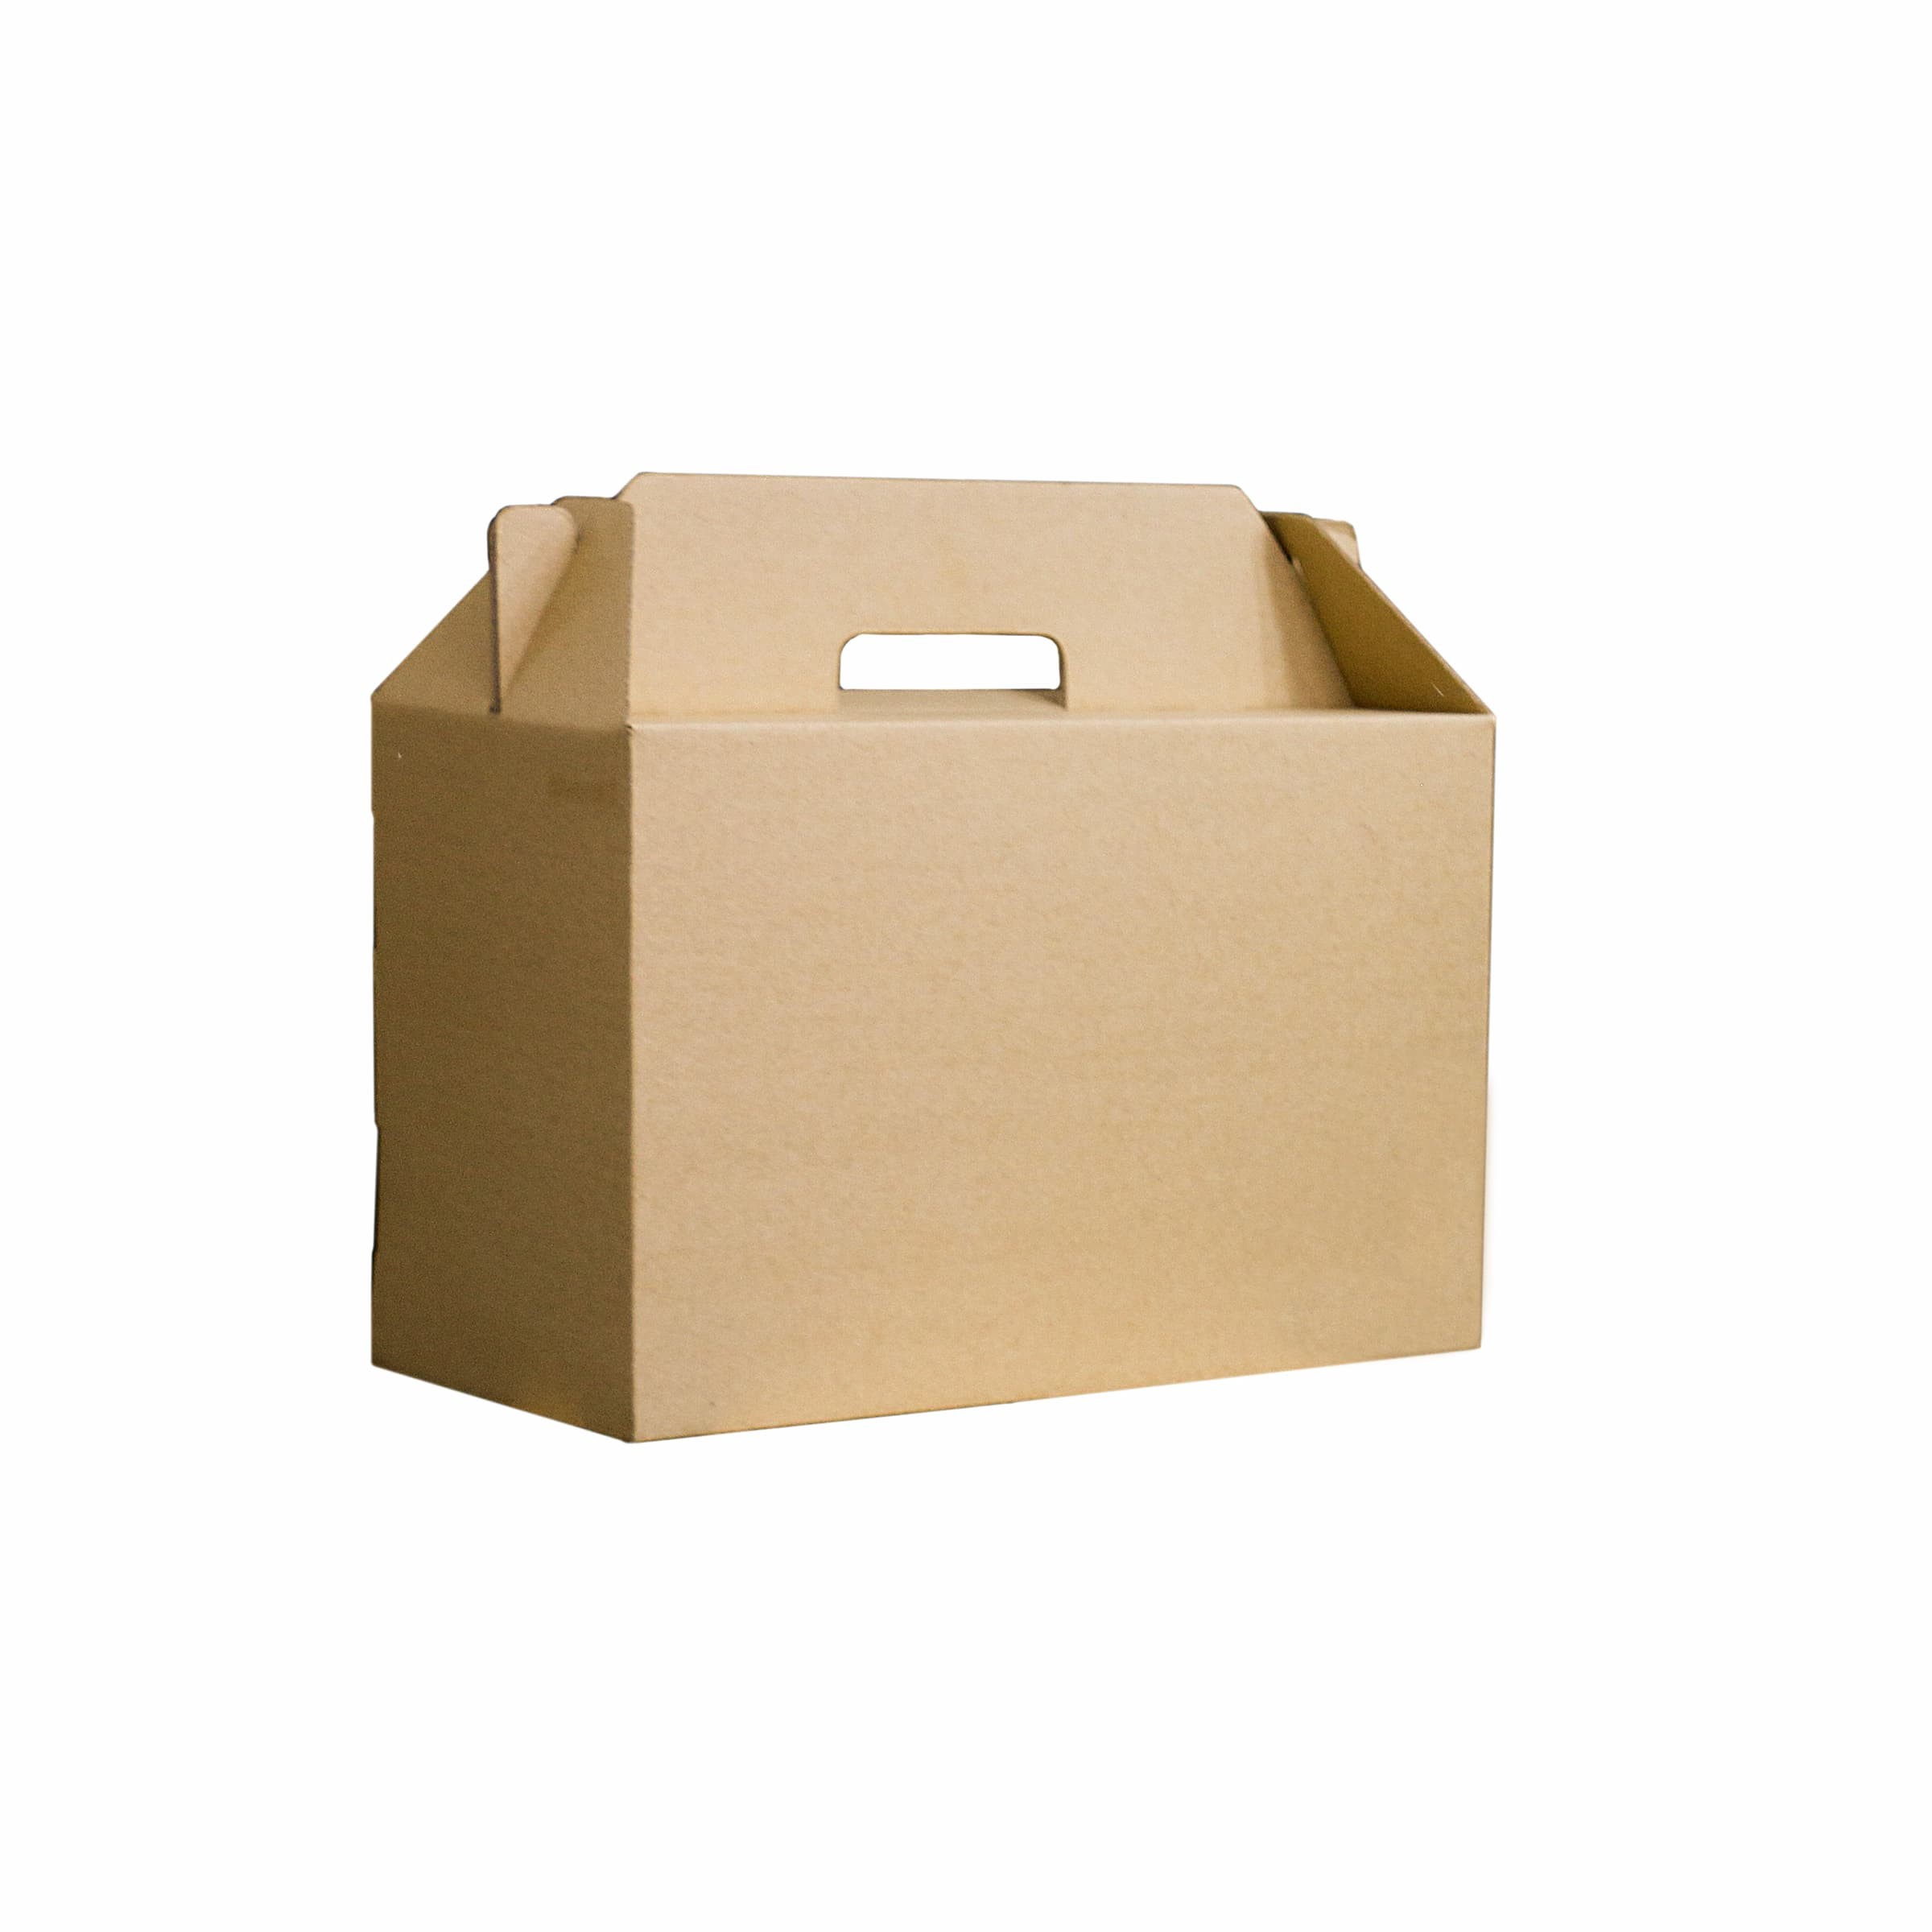 جعبه بسته بندی مدل kb1takc بسته ده عددی